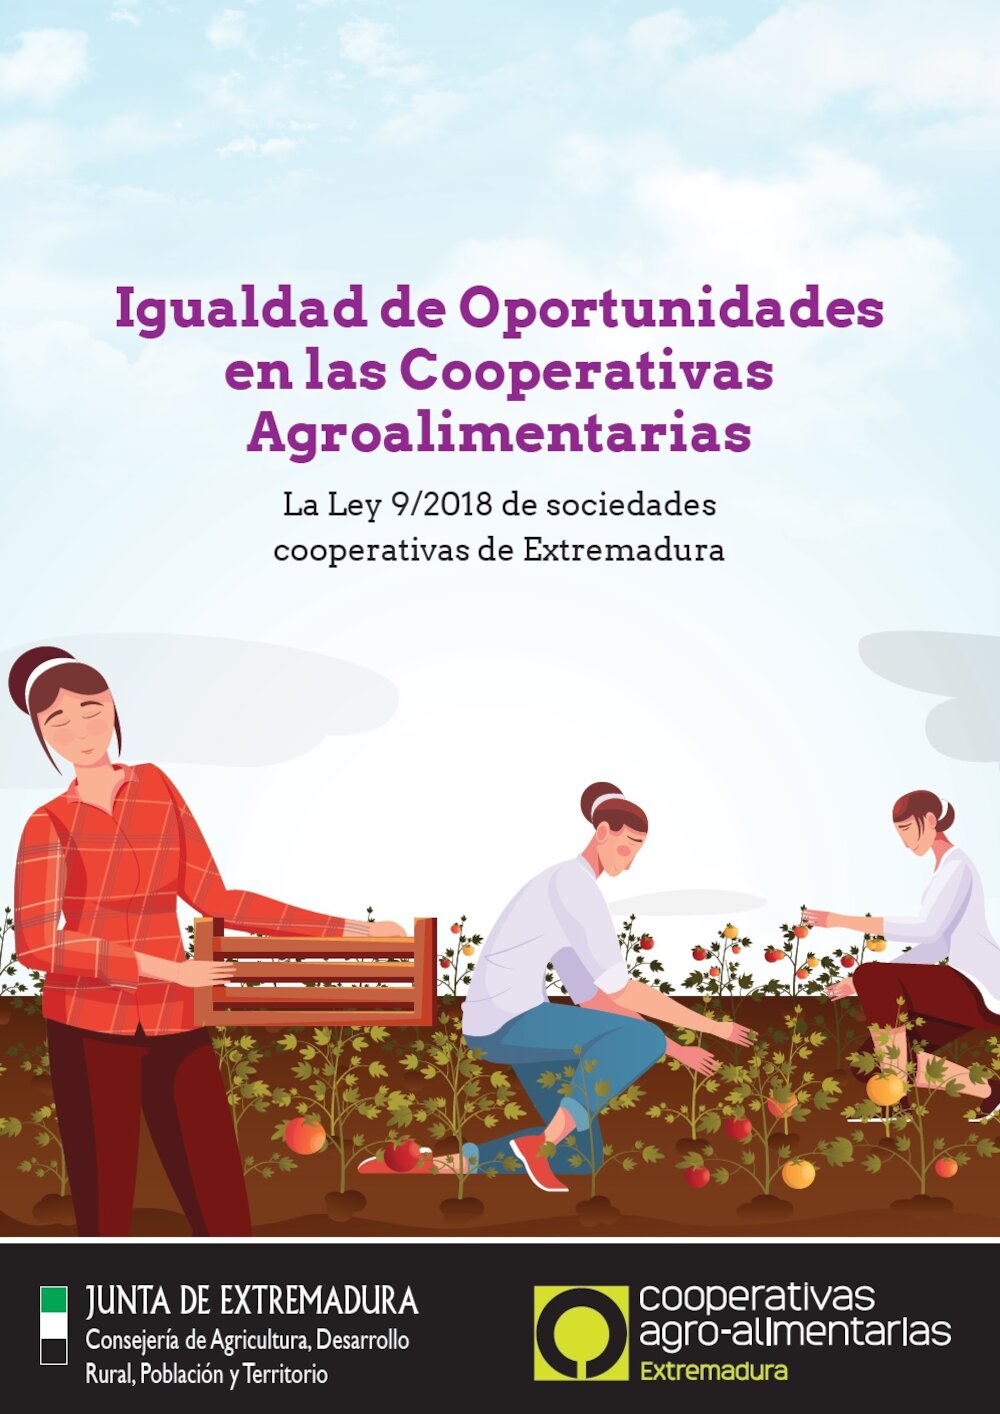 Una guía facilita la aplicación de medidas de igualdad en cooperativas